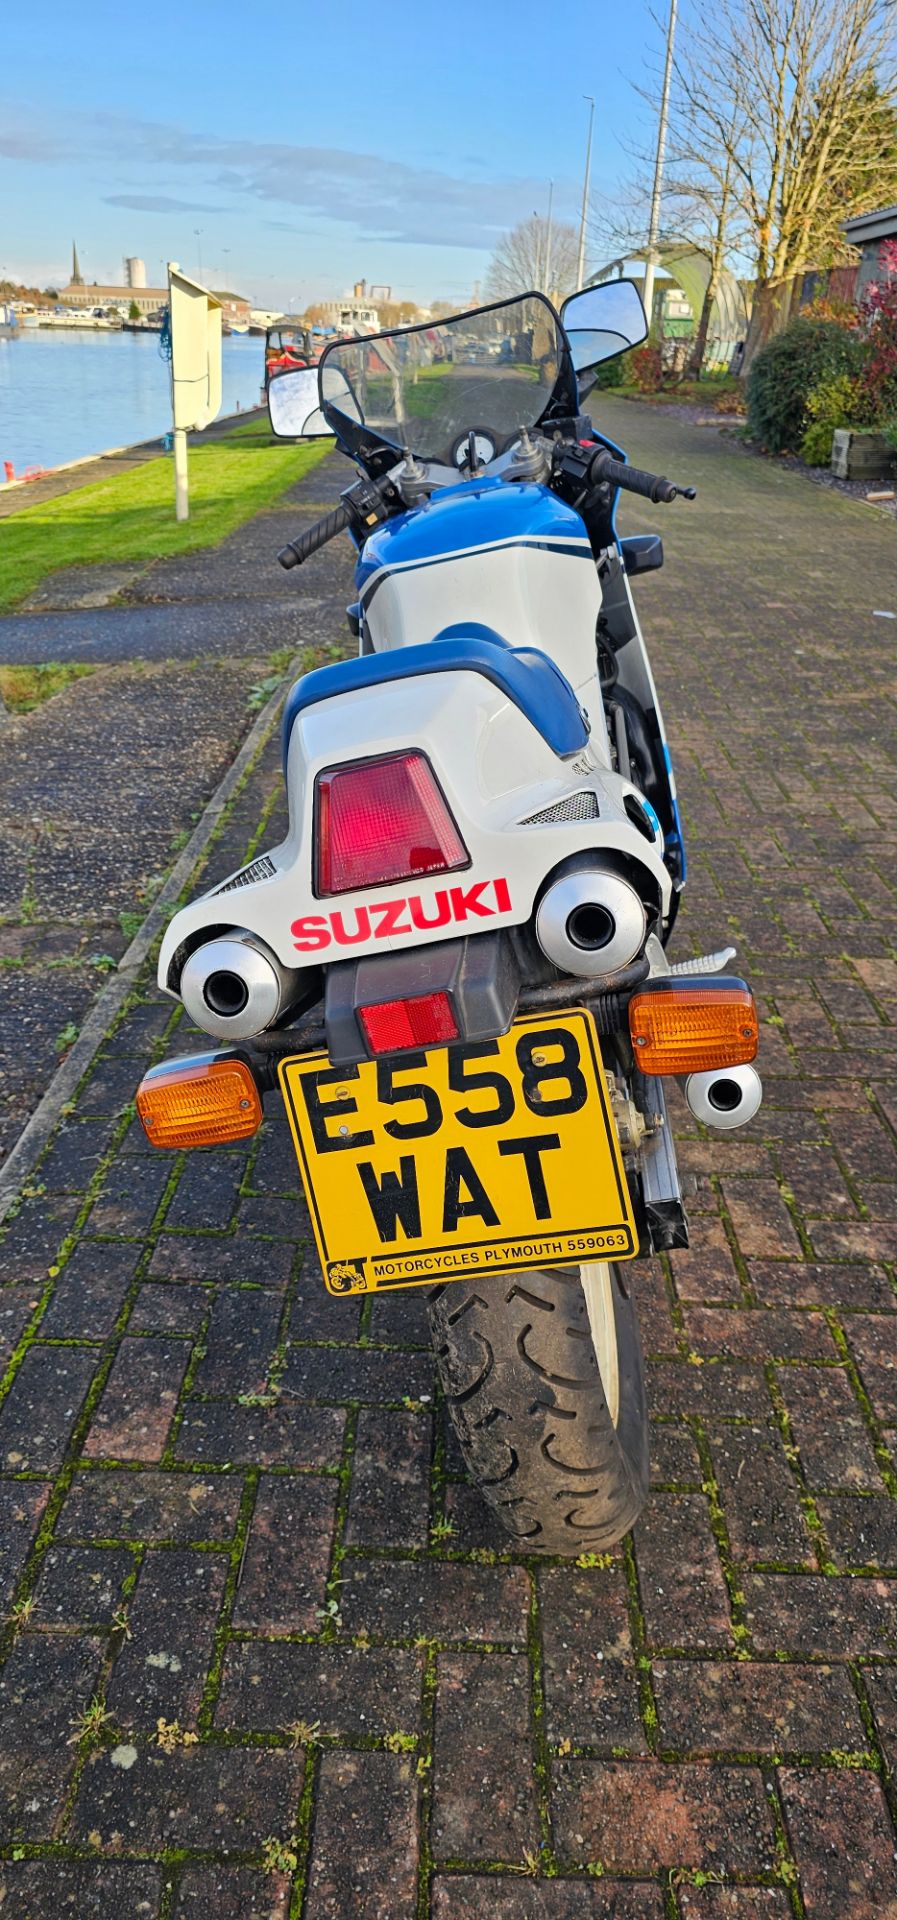 1988 Suzuki RG 500, 498cc. Registration number E558 WAT. Frame number HM31A -106280. Engine number - Image 4 of 15